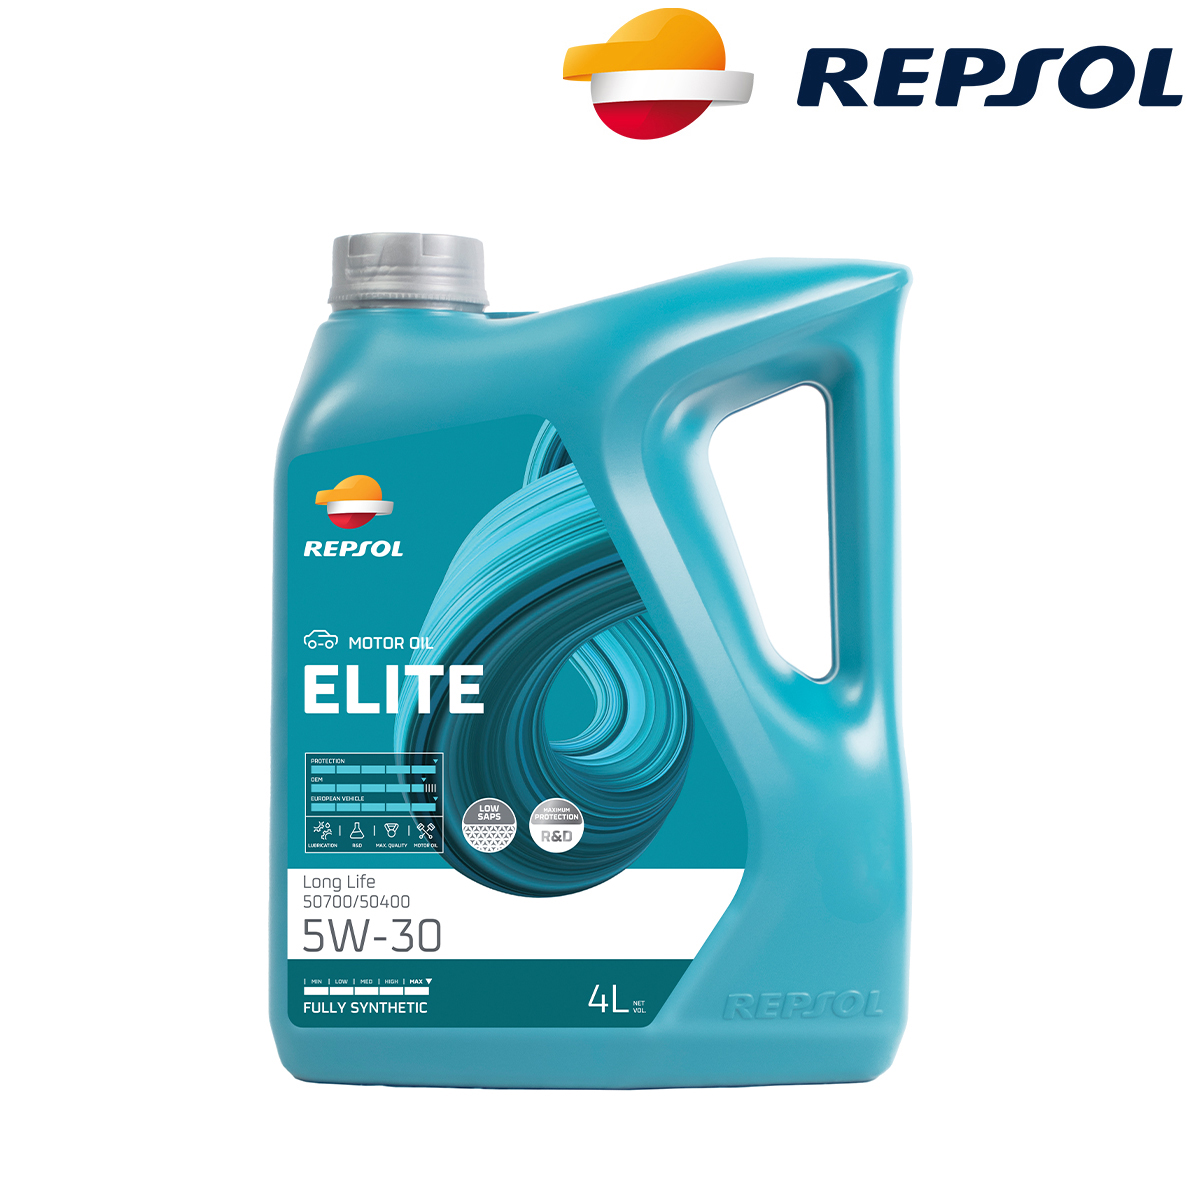 Motorno ulje - ulje za motore Repsol Elite Long Life 50700/50400 5W30 4l RPP0057IGB